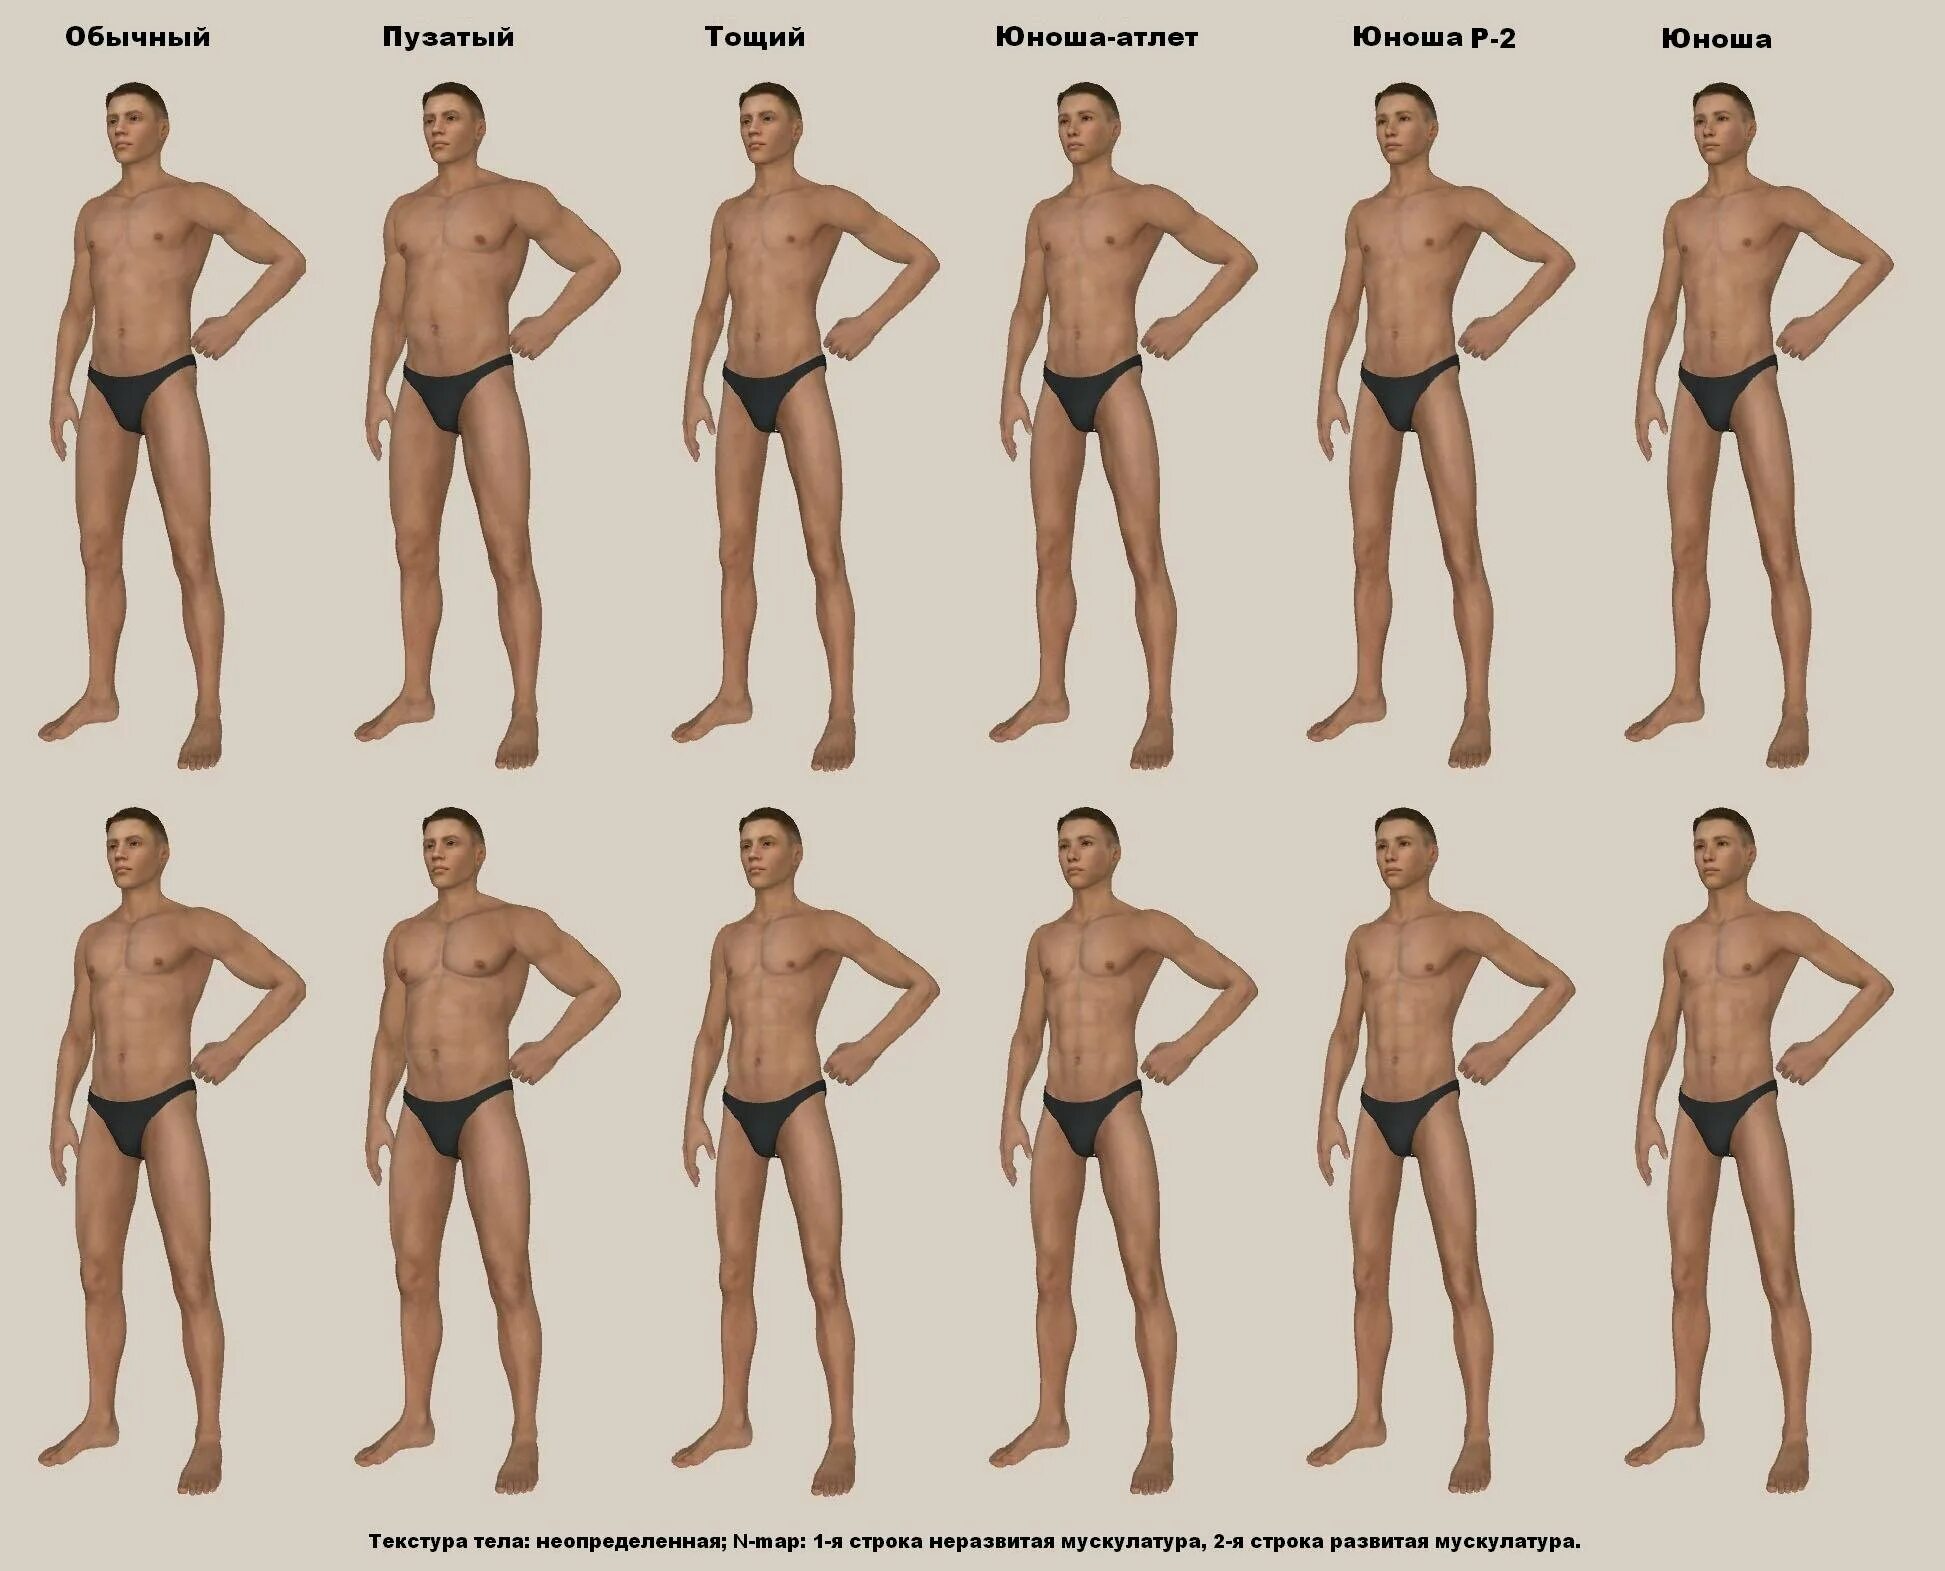 Виды мужской фигуры. Различные мужские фигуры. Типы мужских фигур. Типы мужского телосложения. Мужчины разной комплекции.